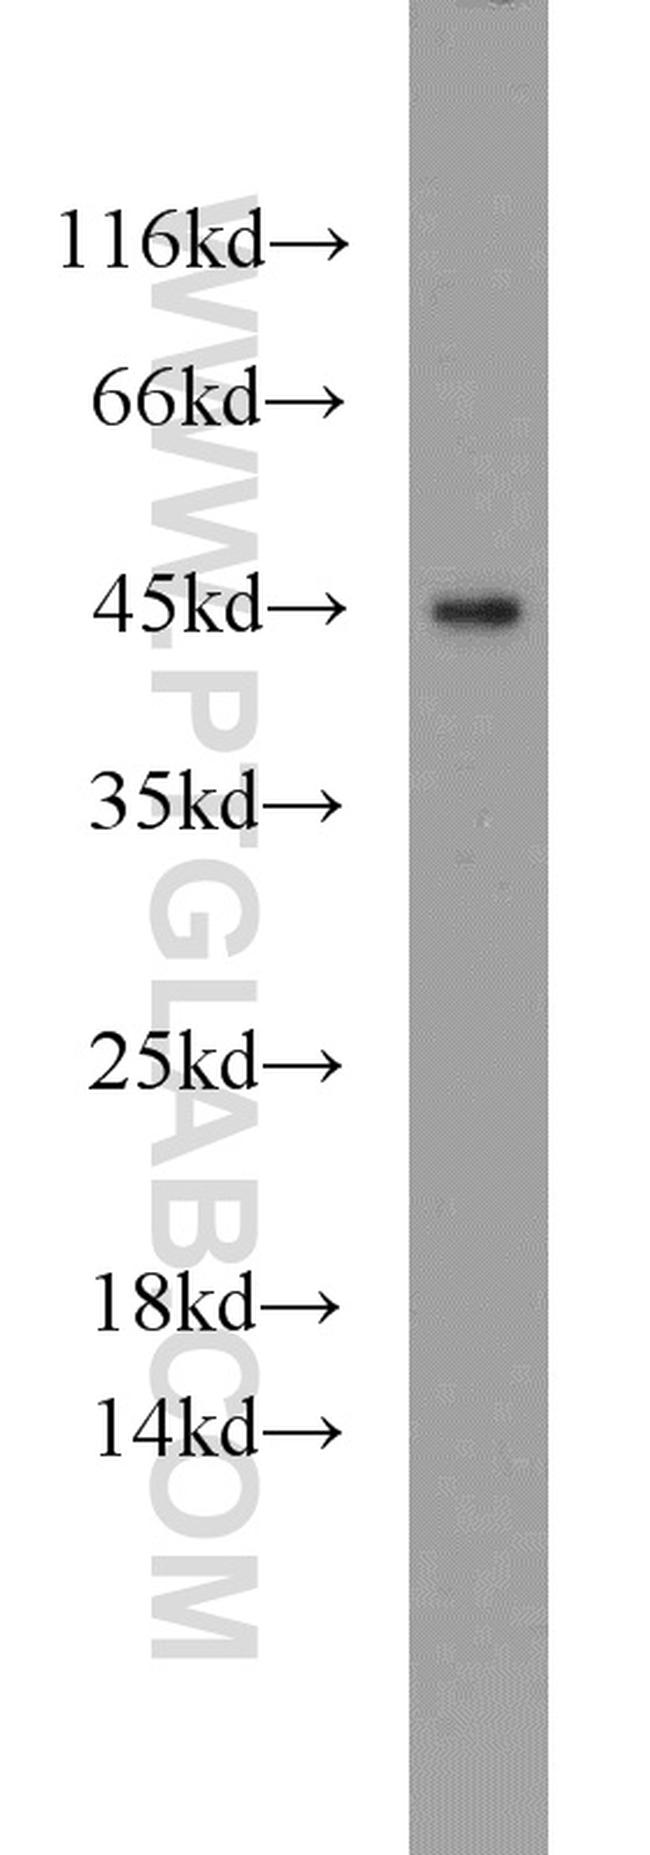 C3orf21 Antibody in Western Blot (WB)